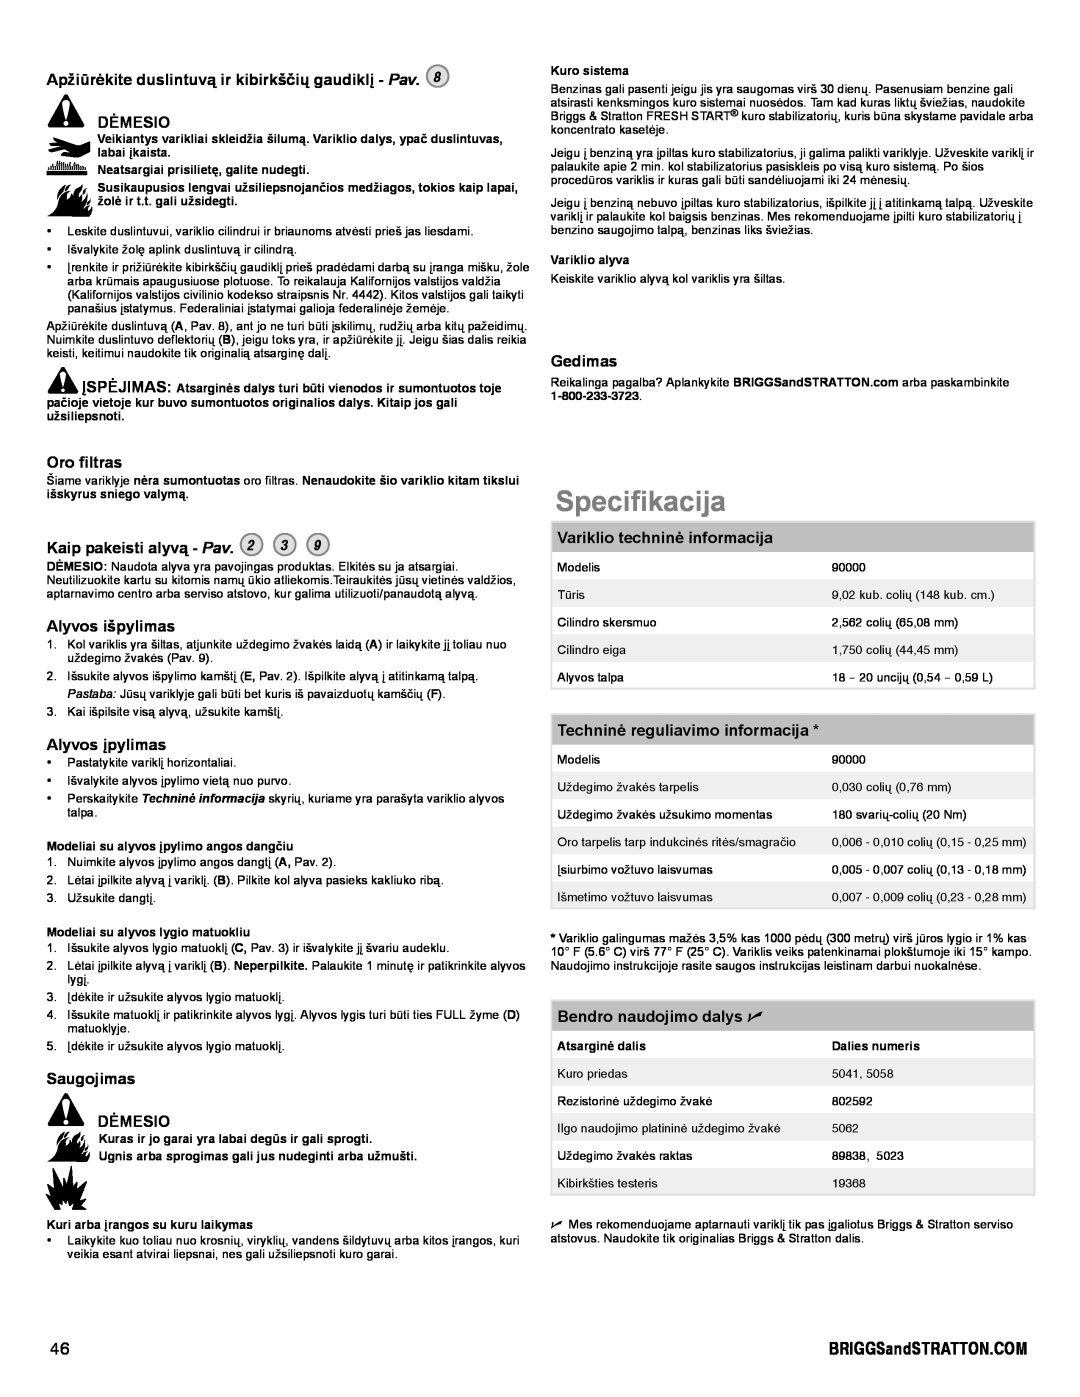 Snapper 90000 manual Specifikacija, Apžiūrėkite duslintuvą ir kibirkščių gaudiklį - Pav DĖMESIO, Gedimas, Oro filtras 